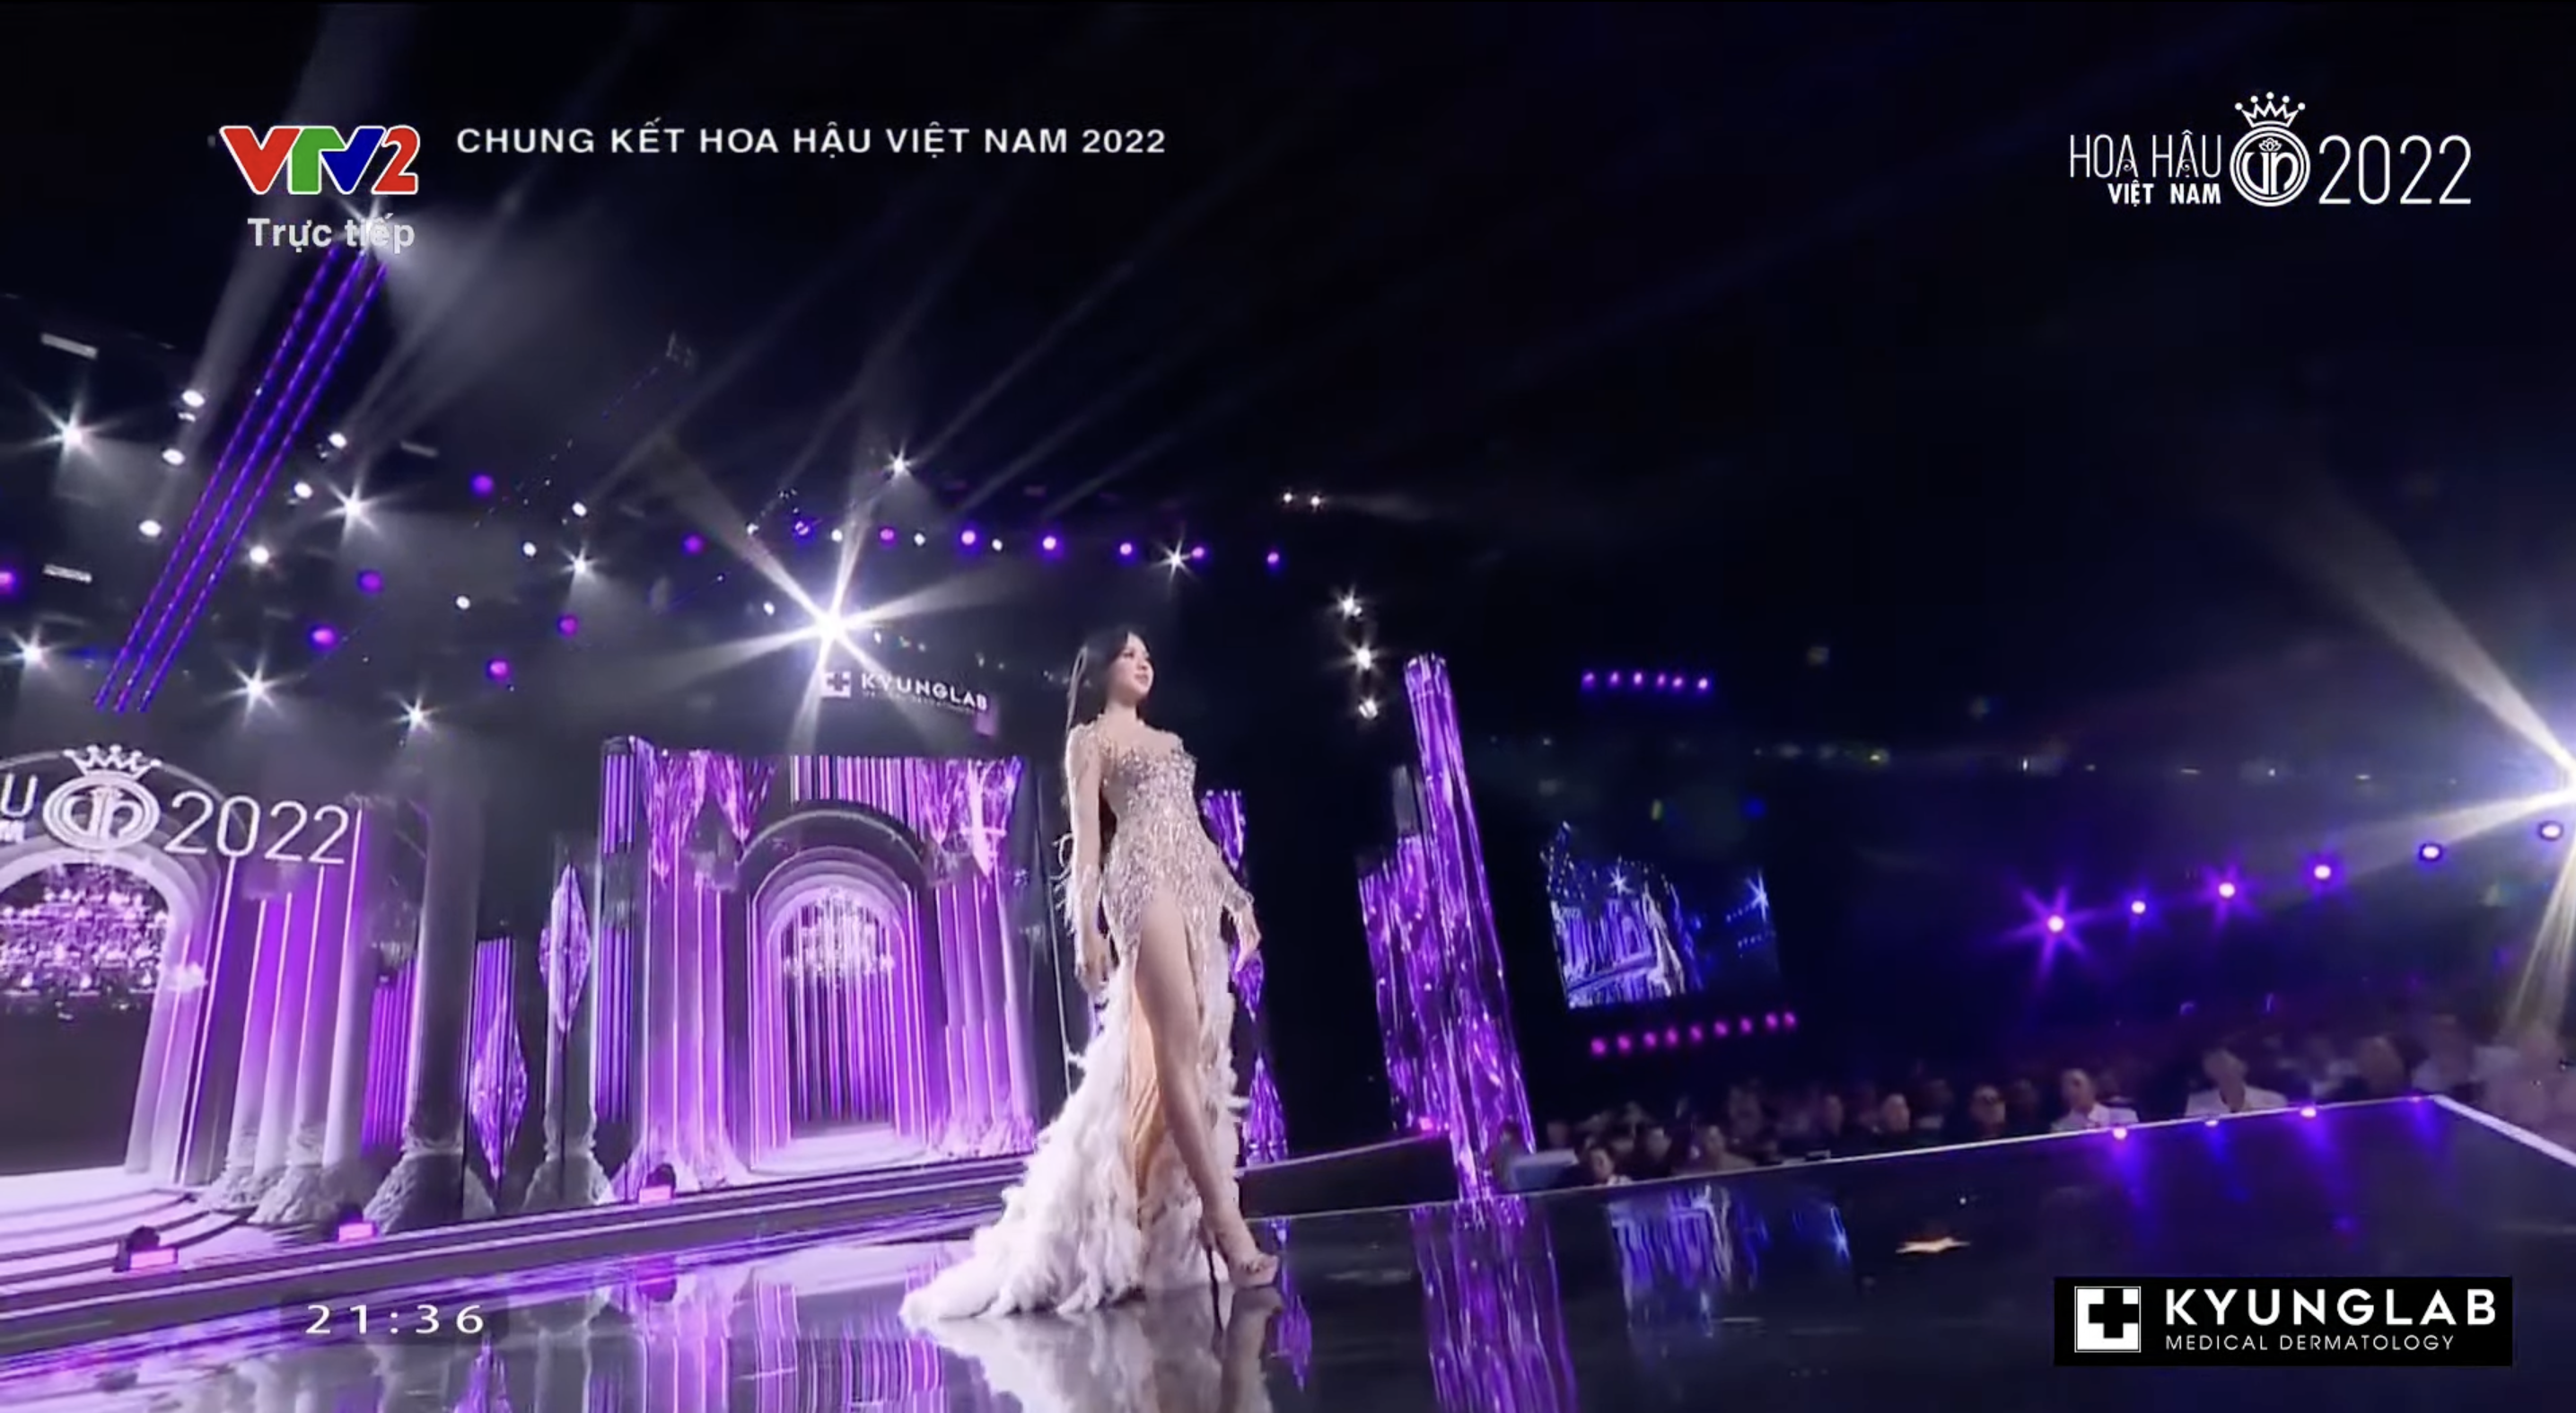 Chung kết Hoa hậu Việt Nam 2022: Tân Hoa hậu chính thức gọi tên Huỳnh Thị Thanh Thuỷ - 29